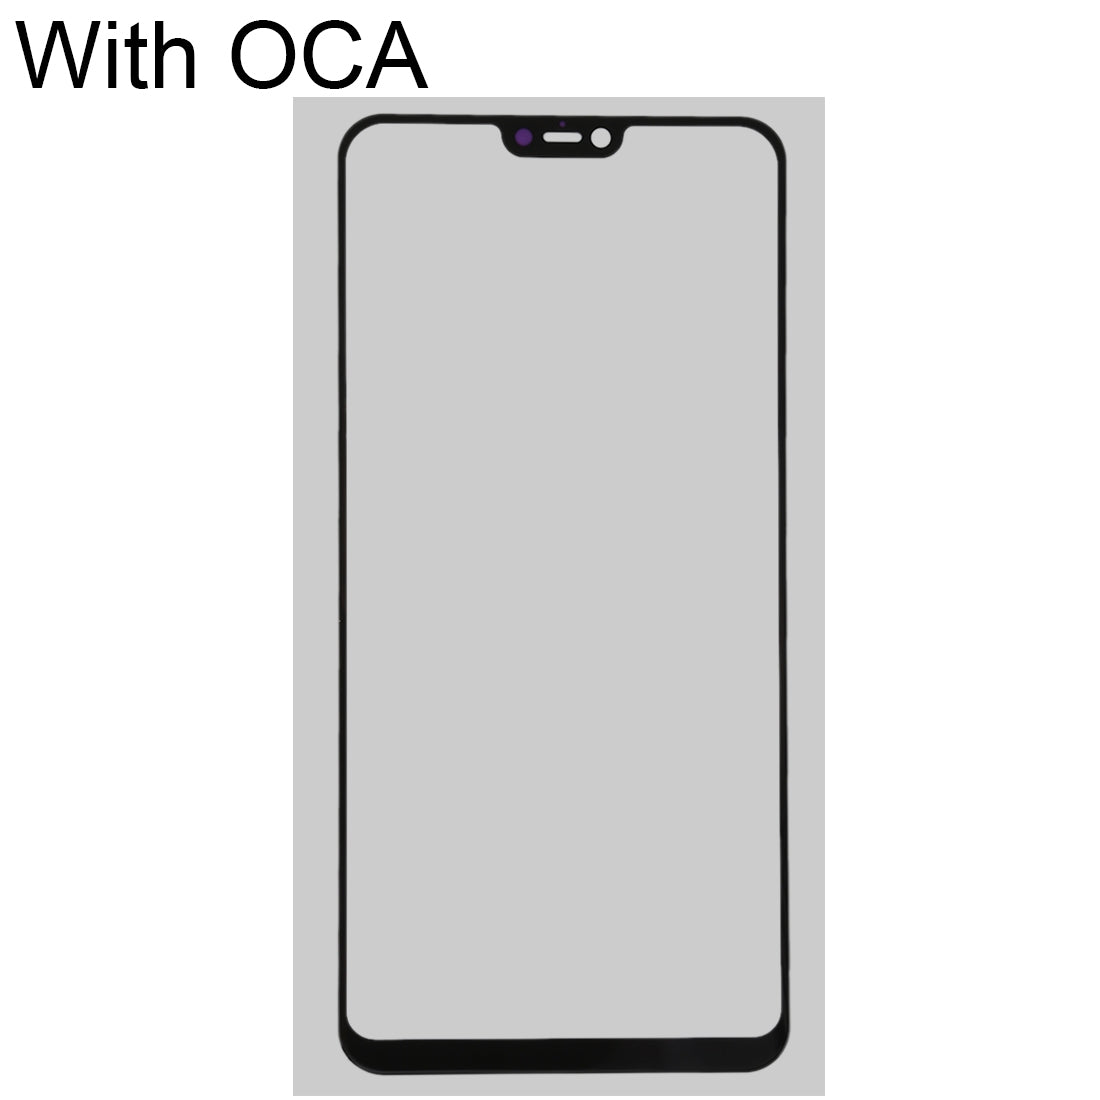 Front Screen Glass + OCA Vivo Y85 / Z1 Adhesive